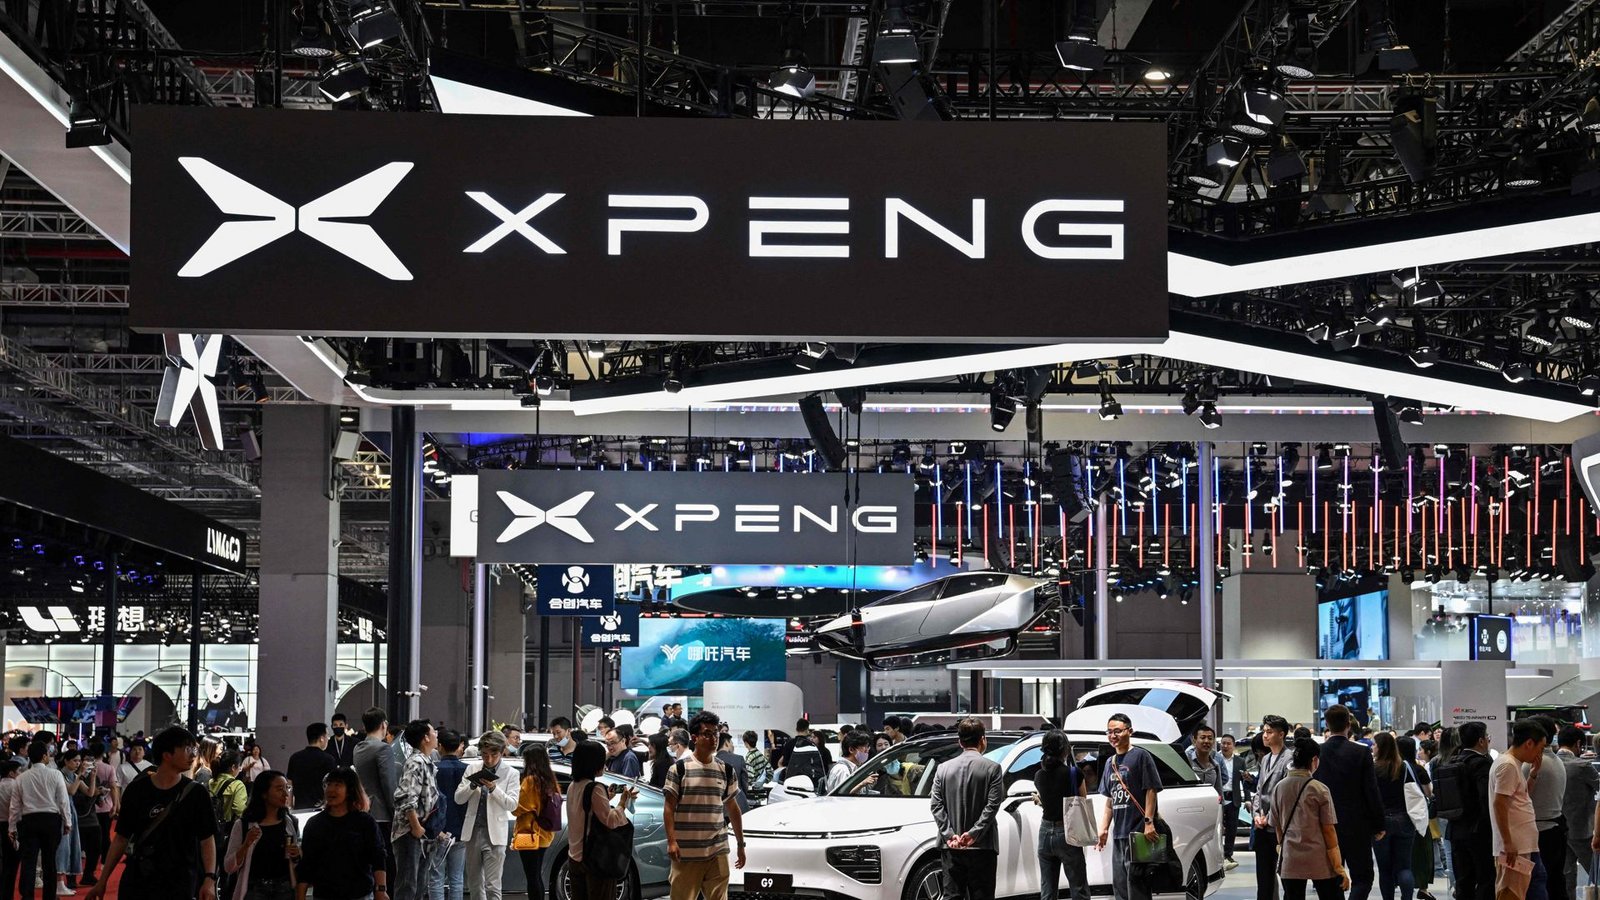 Die Marke Xpeng gehörte im vergangenen Jahr auf der Automesse in Schanghai zu den großen Überraschungen aus China.Foto: AFP/Hector Retamal